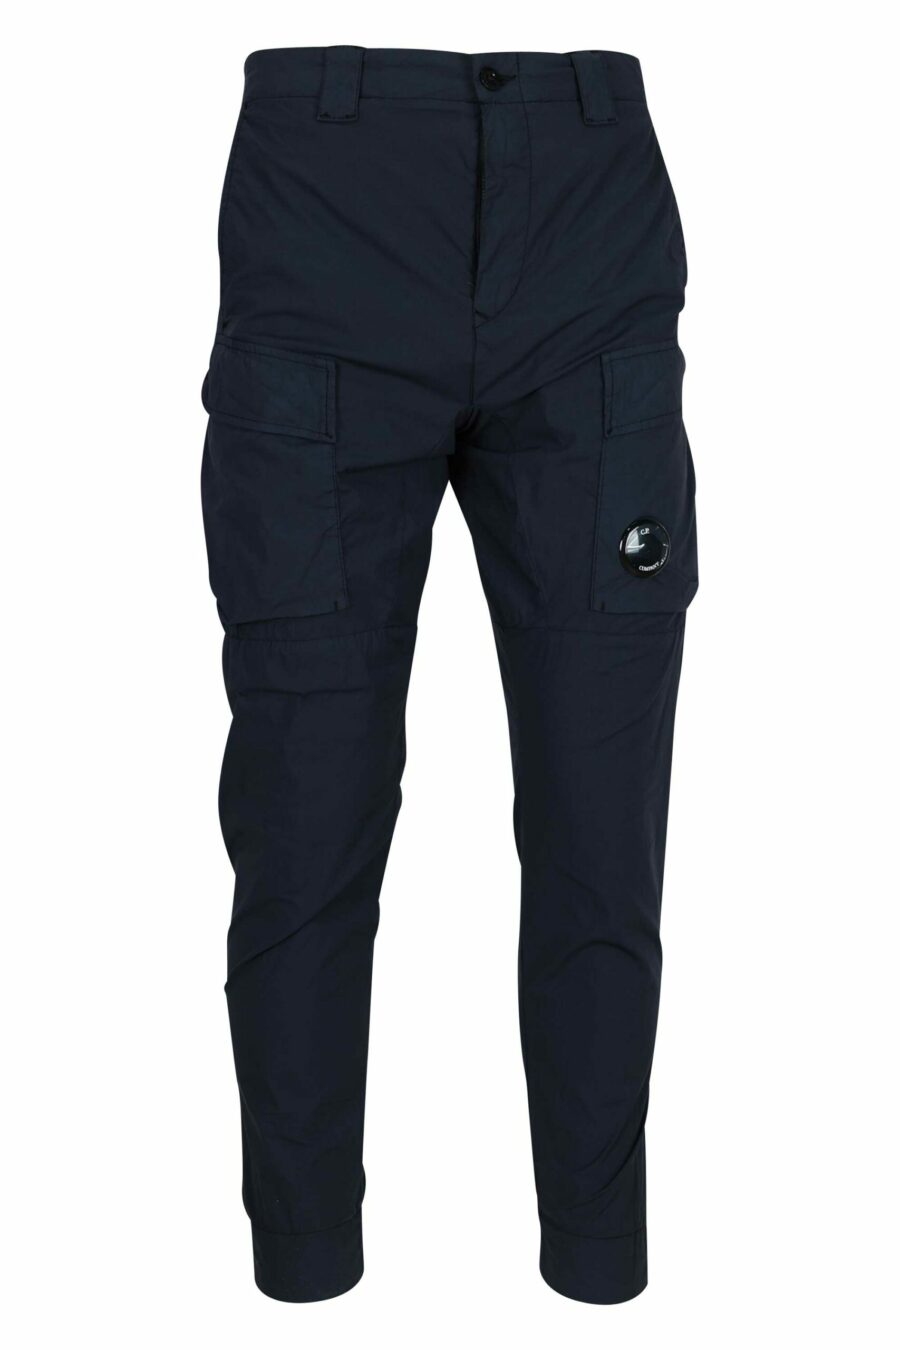 Pantalon bleu foncé avec poches avant et mini logo en forme de lentille - 7620943806397 scaled